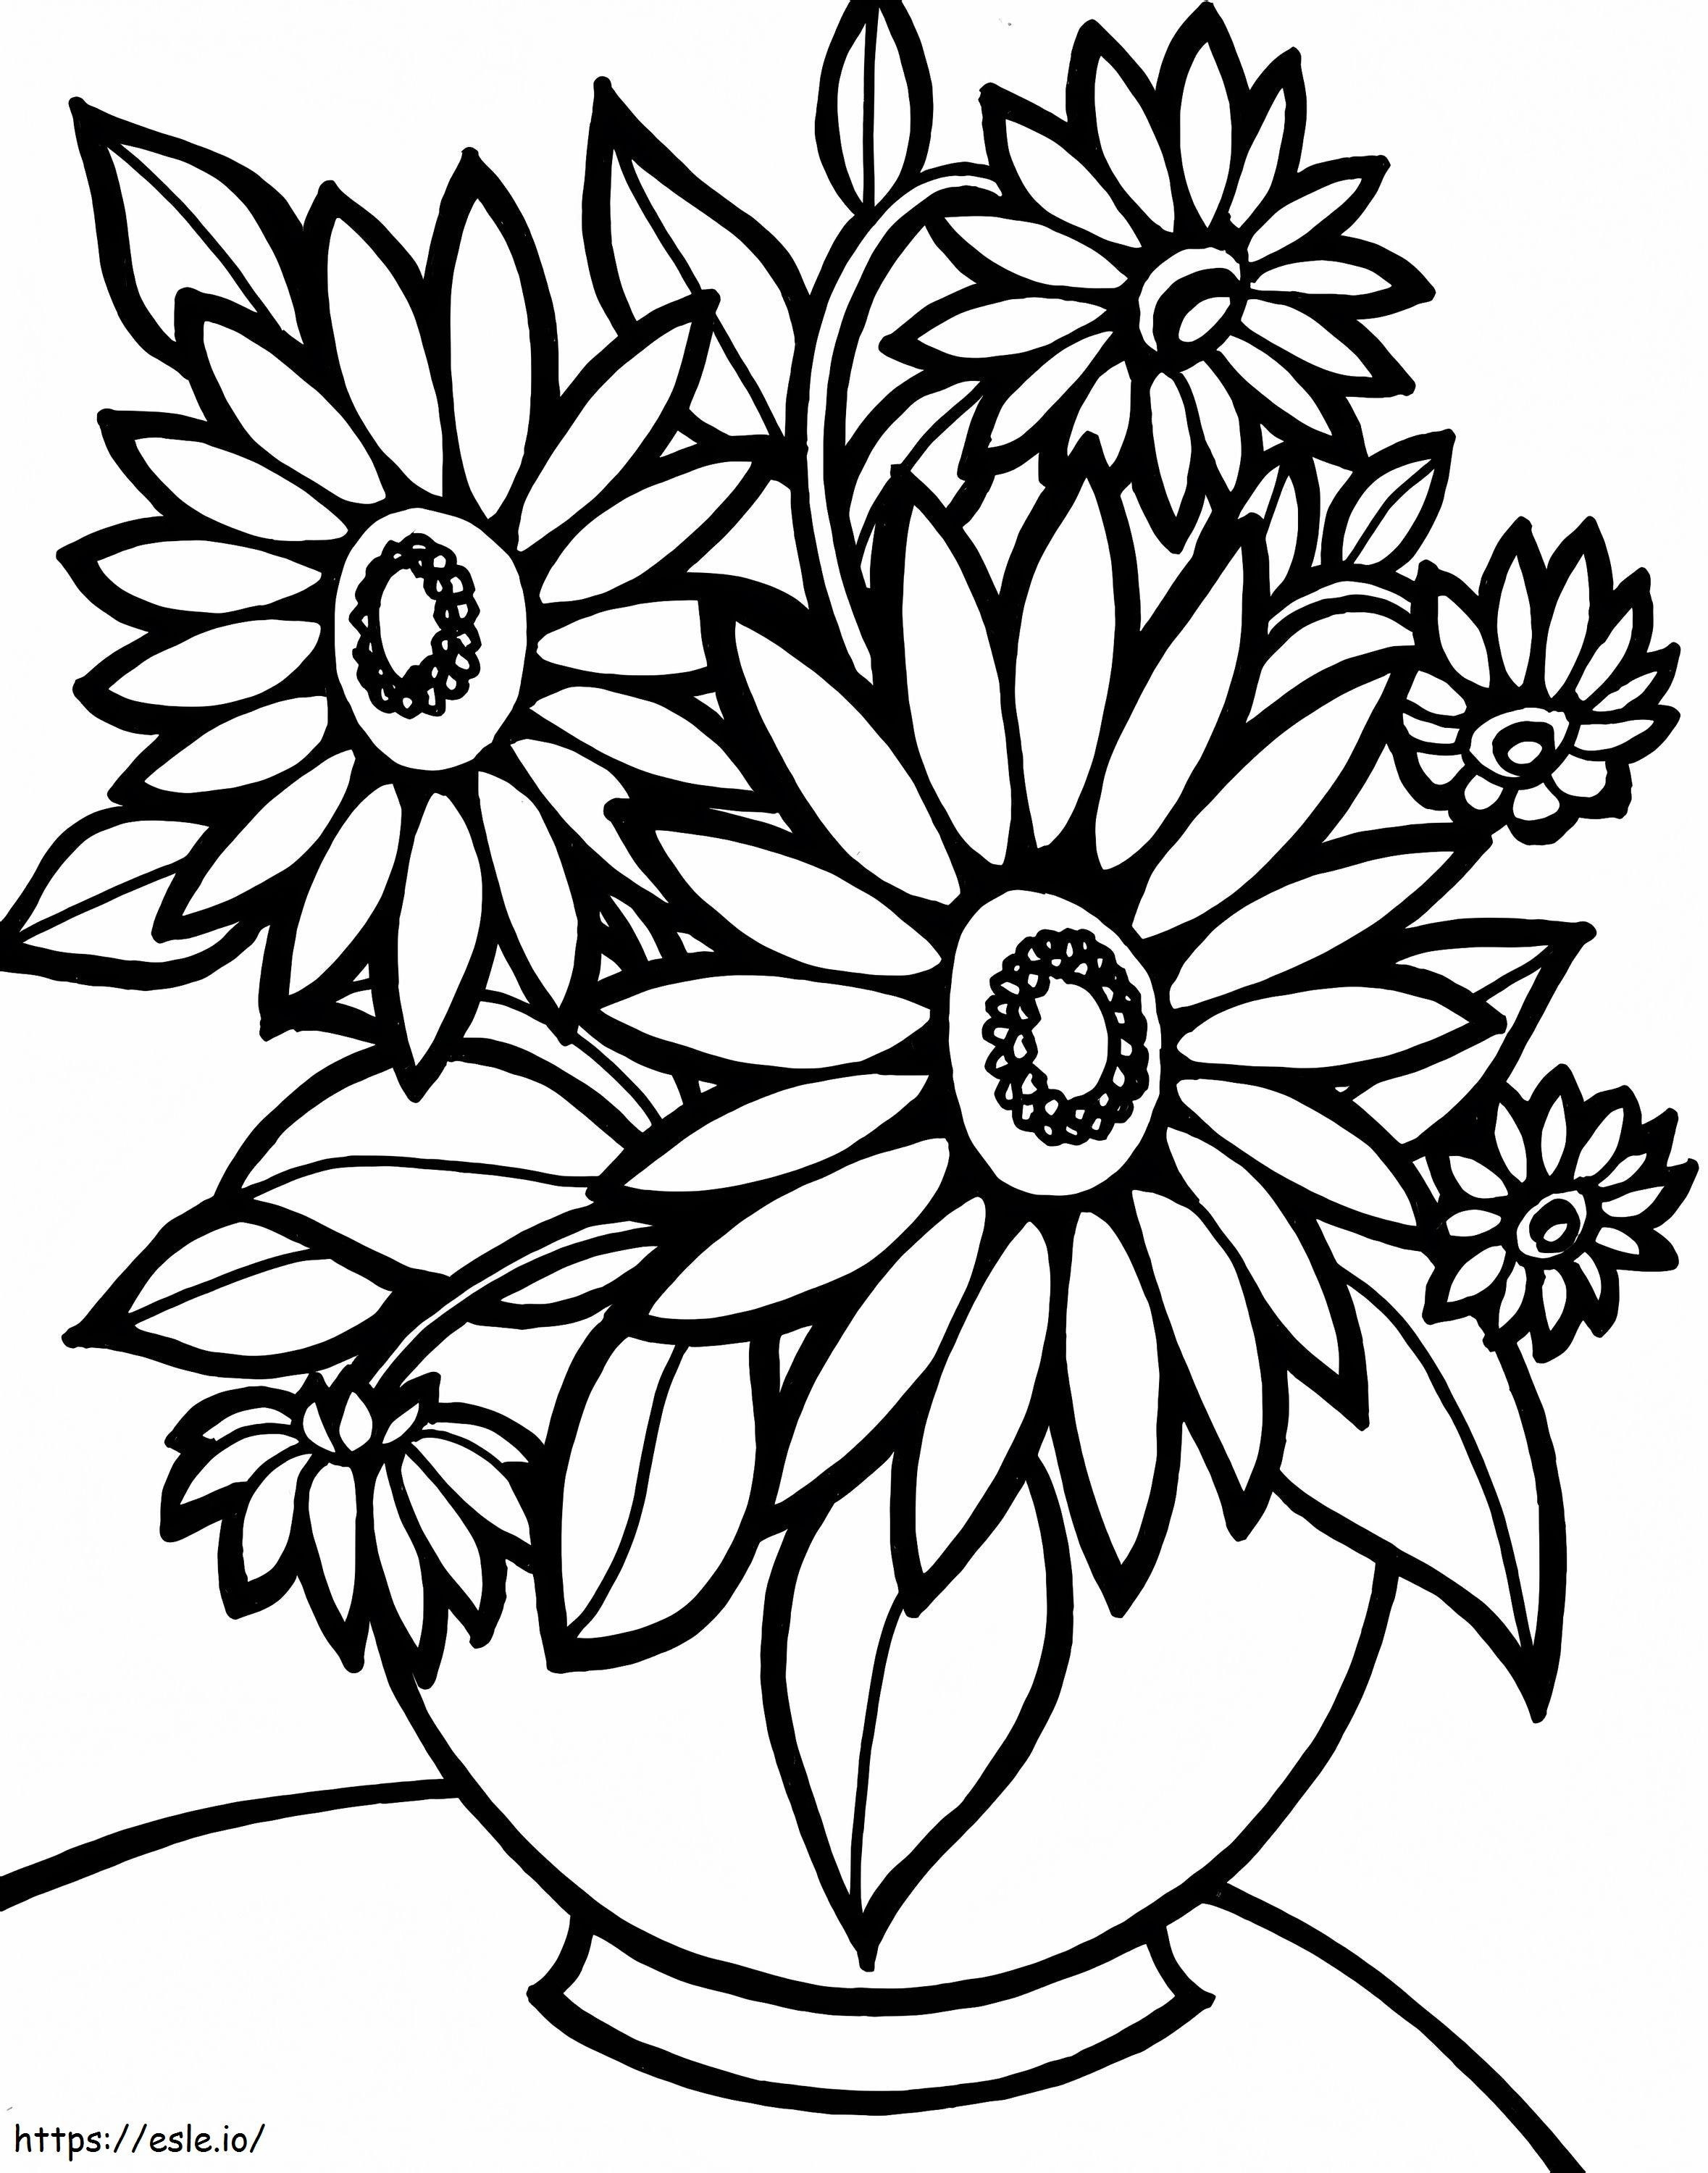 Coloriage 1539917945 Coloriage Fleur Facile à Imprimer Destiné à Fleur Facilement Imprimable Concernant Les Enfants à imprimer dessin